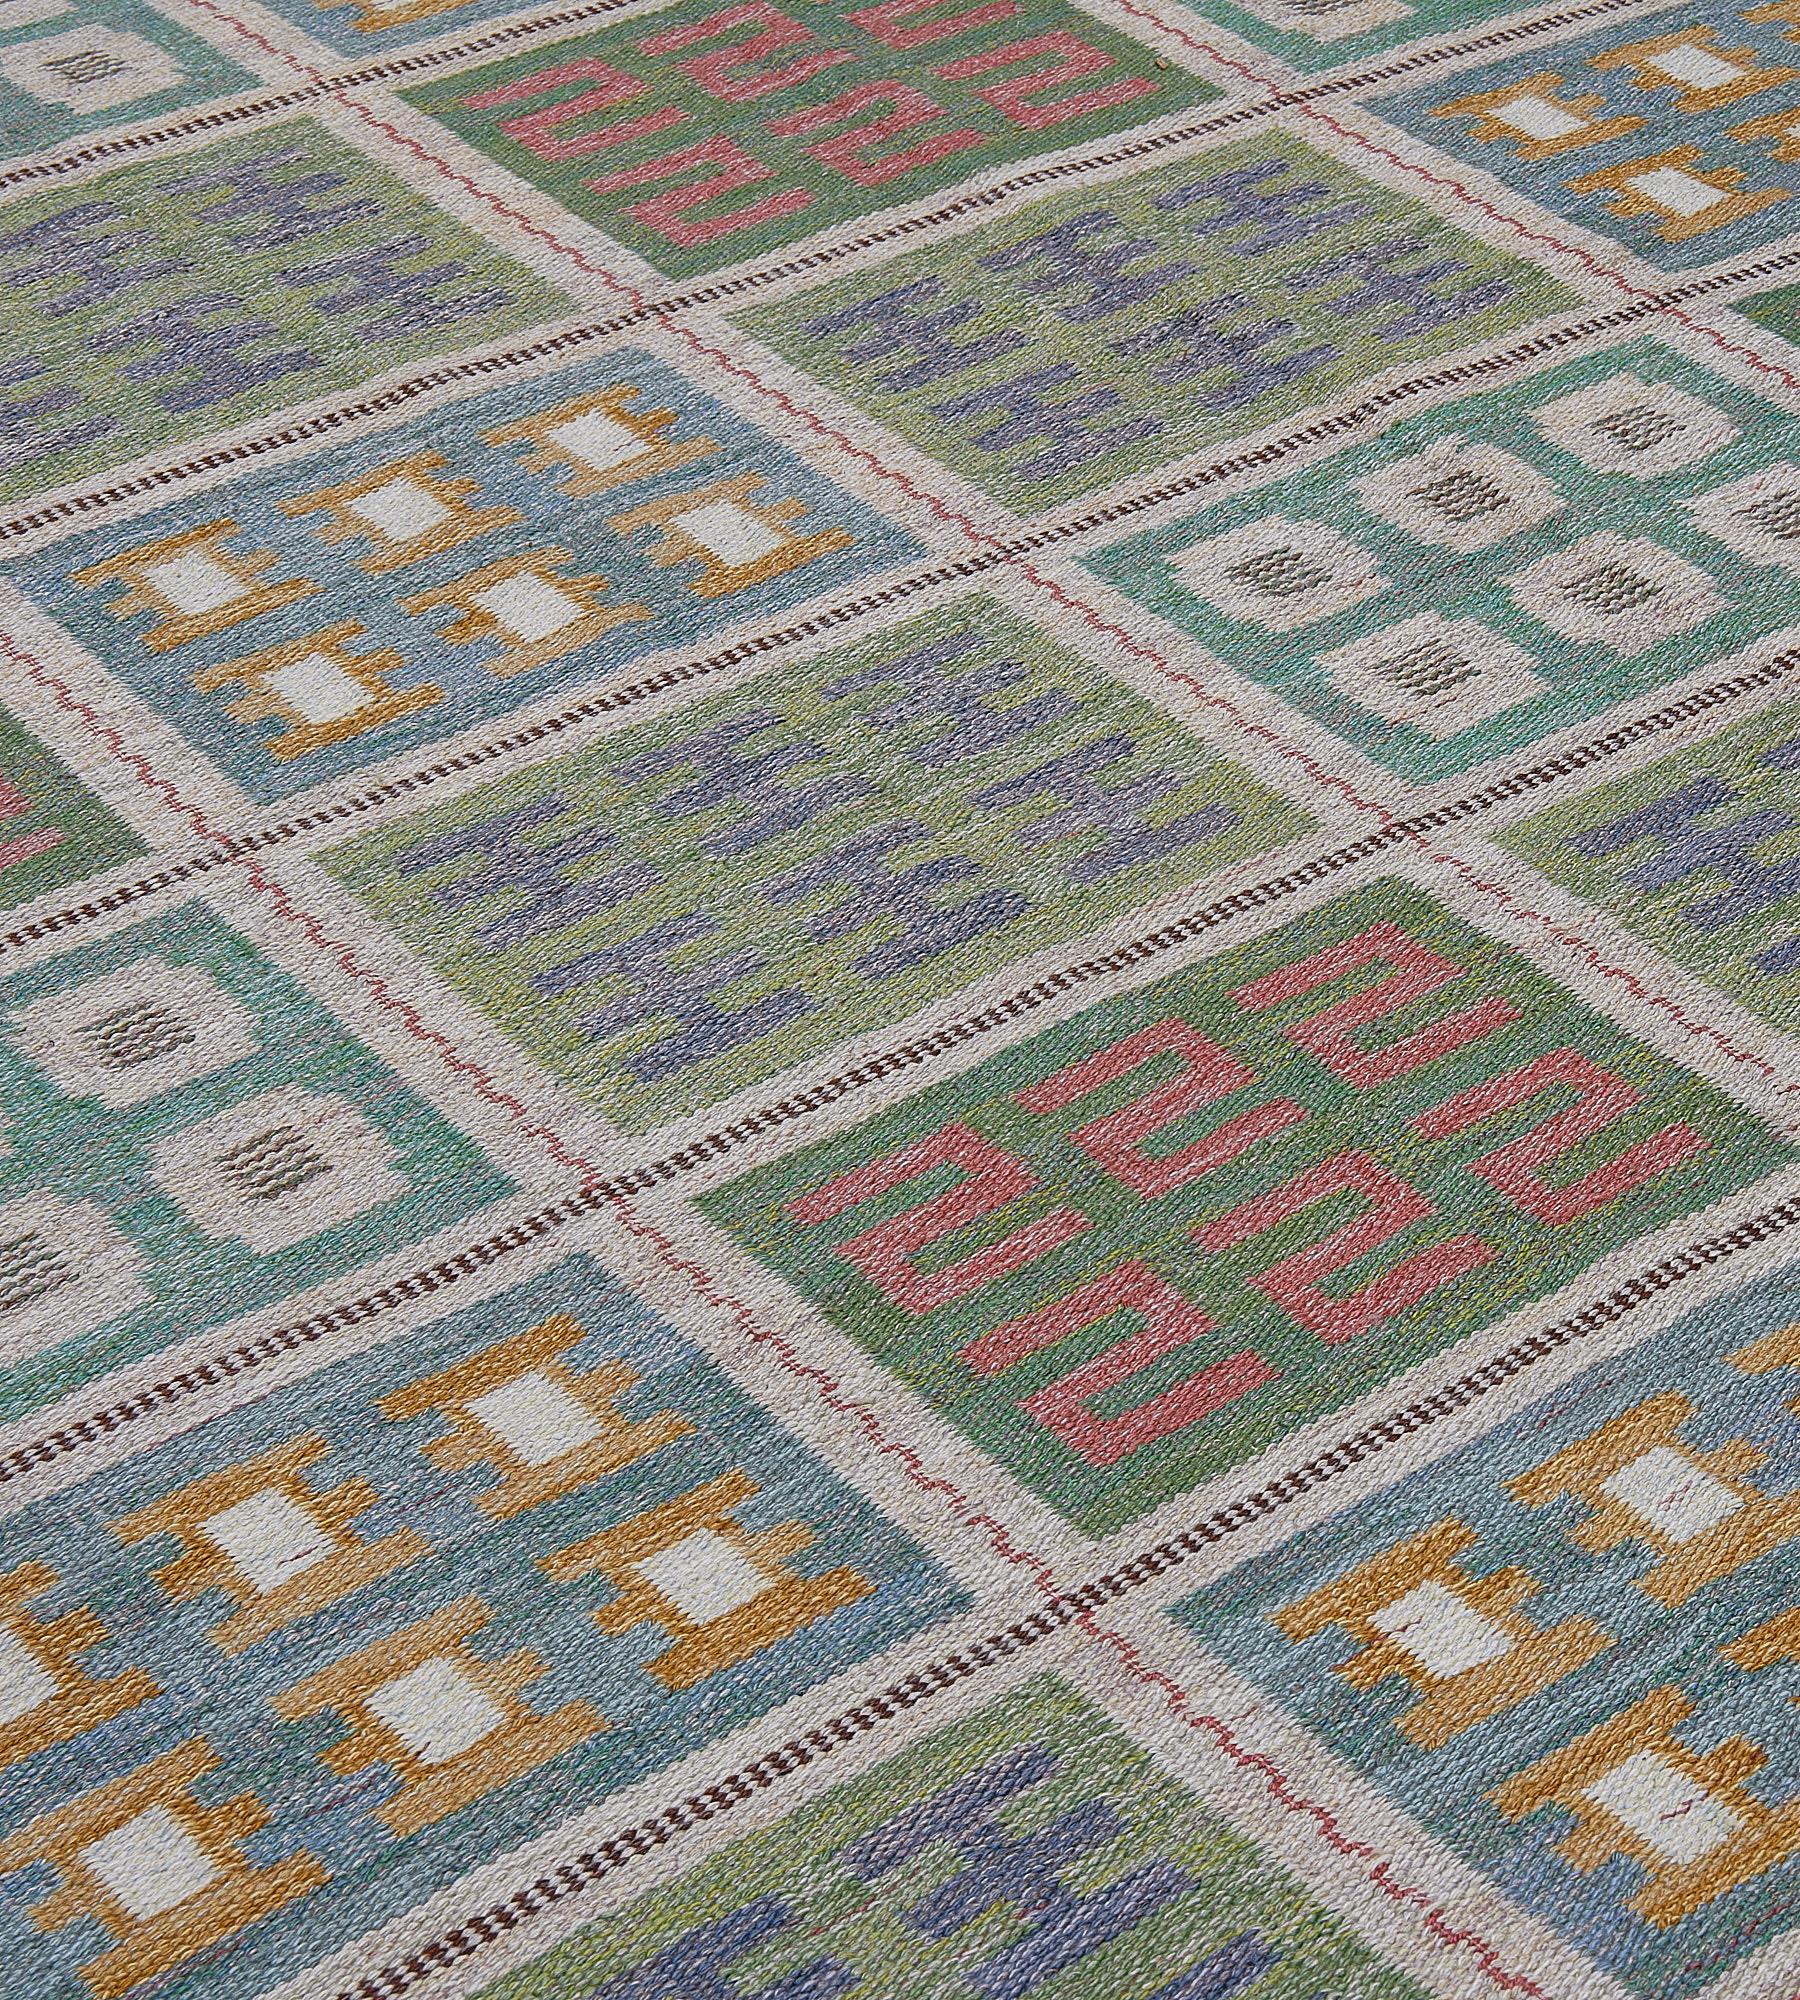 Dieser schwedische Flachgewebe-Teppich im Vintage-Stil hat ein Feld mit fünf vertikalen Säulen aus acht rechteckigen Kästchen, die jeweils ein meergrünes, hellblaues und moosgrünes kleineres Kästchen mit einer Vielzahl von sechs verschiedenen